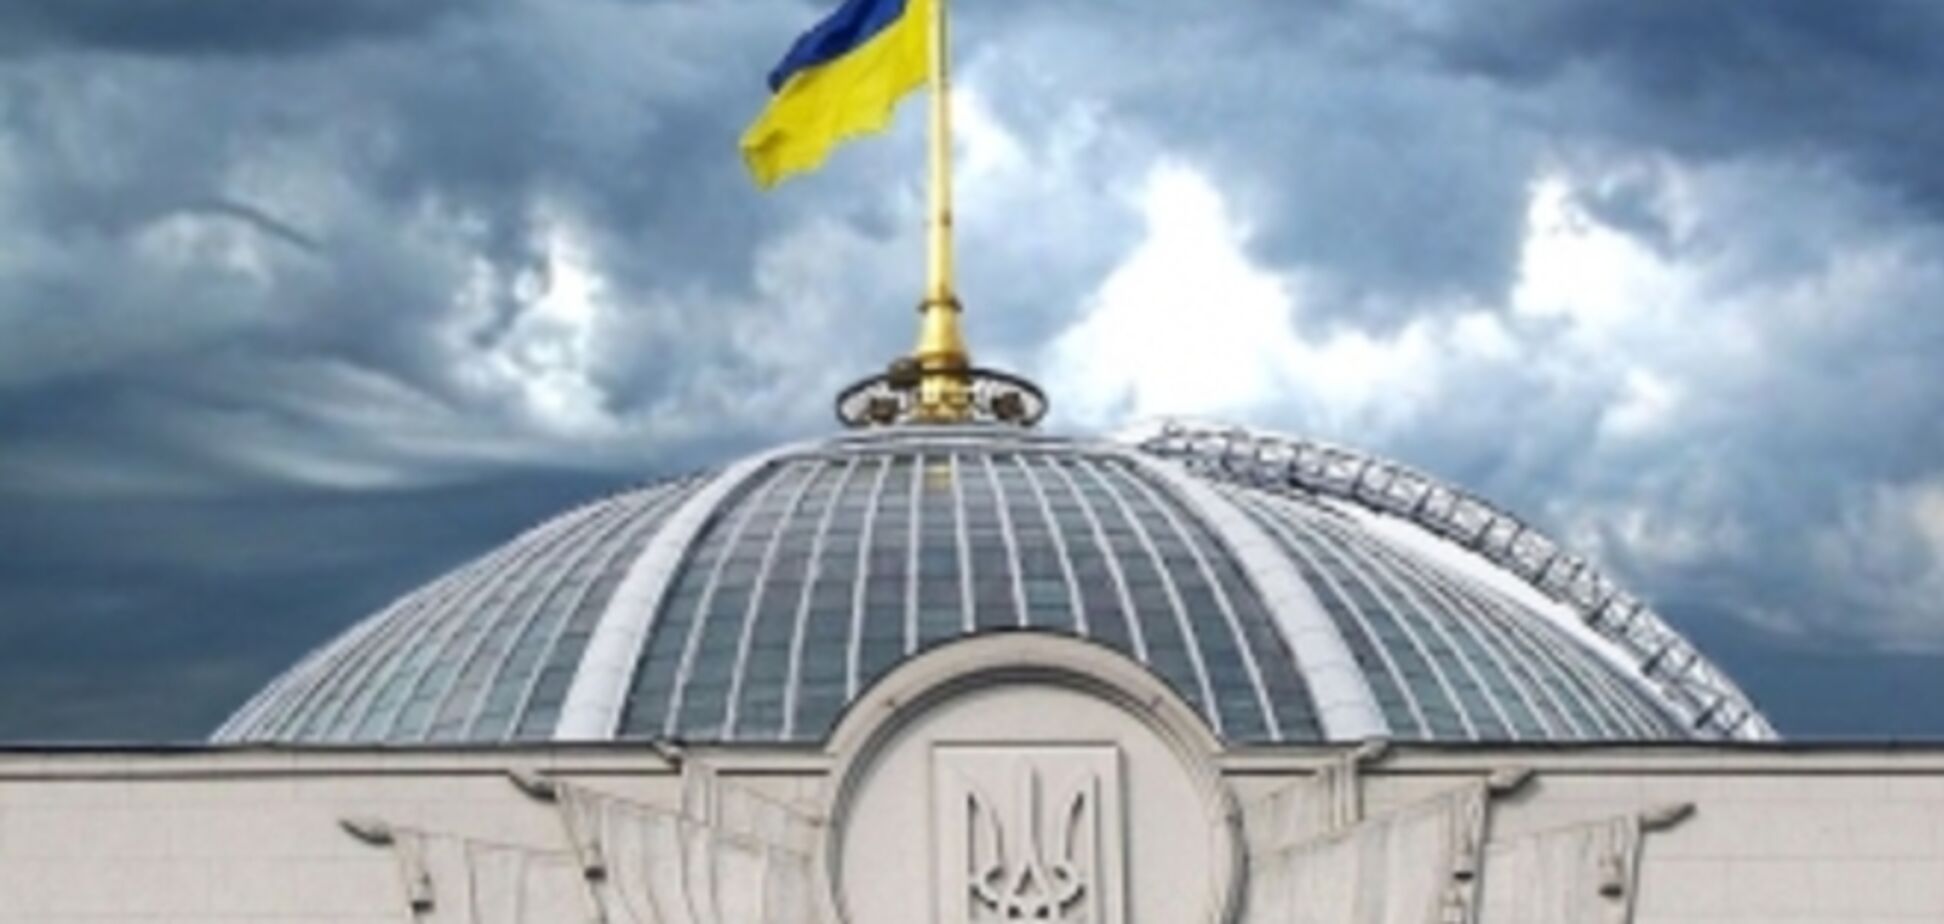 Украинский парламент: конфликт формы и содержания на стыке эпох